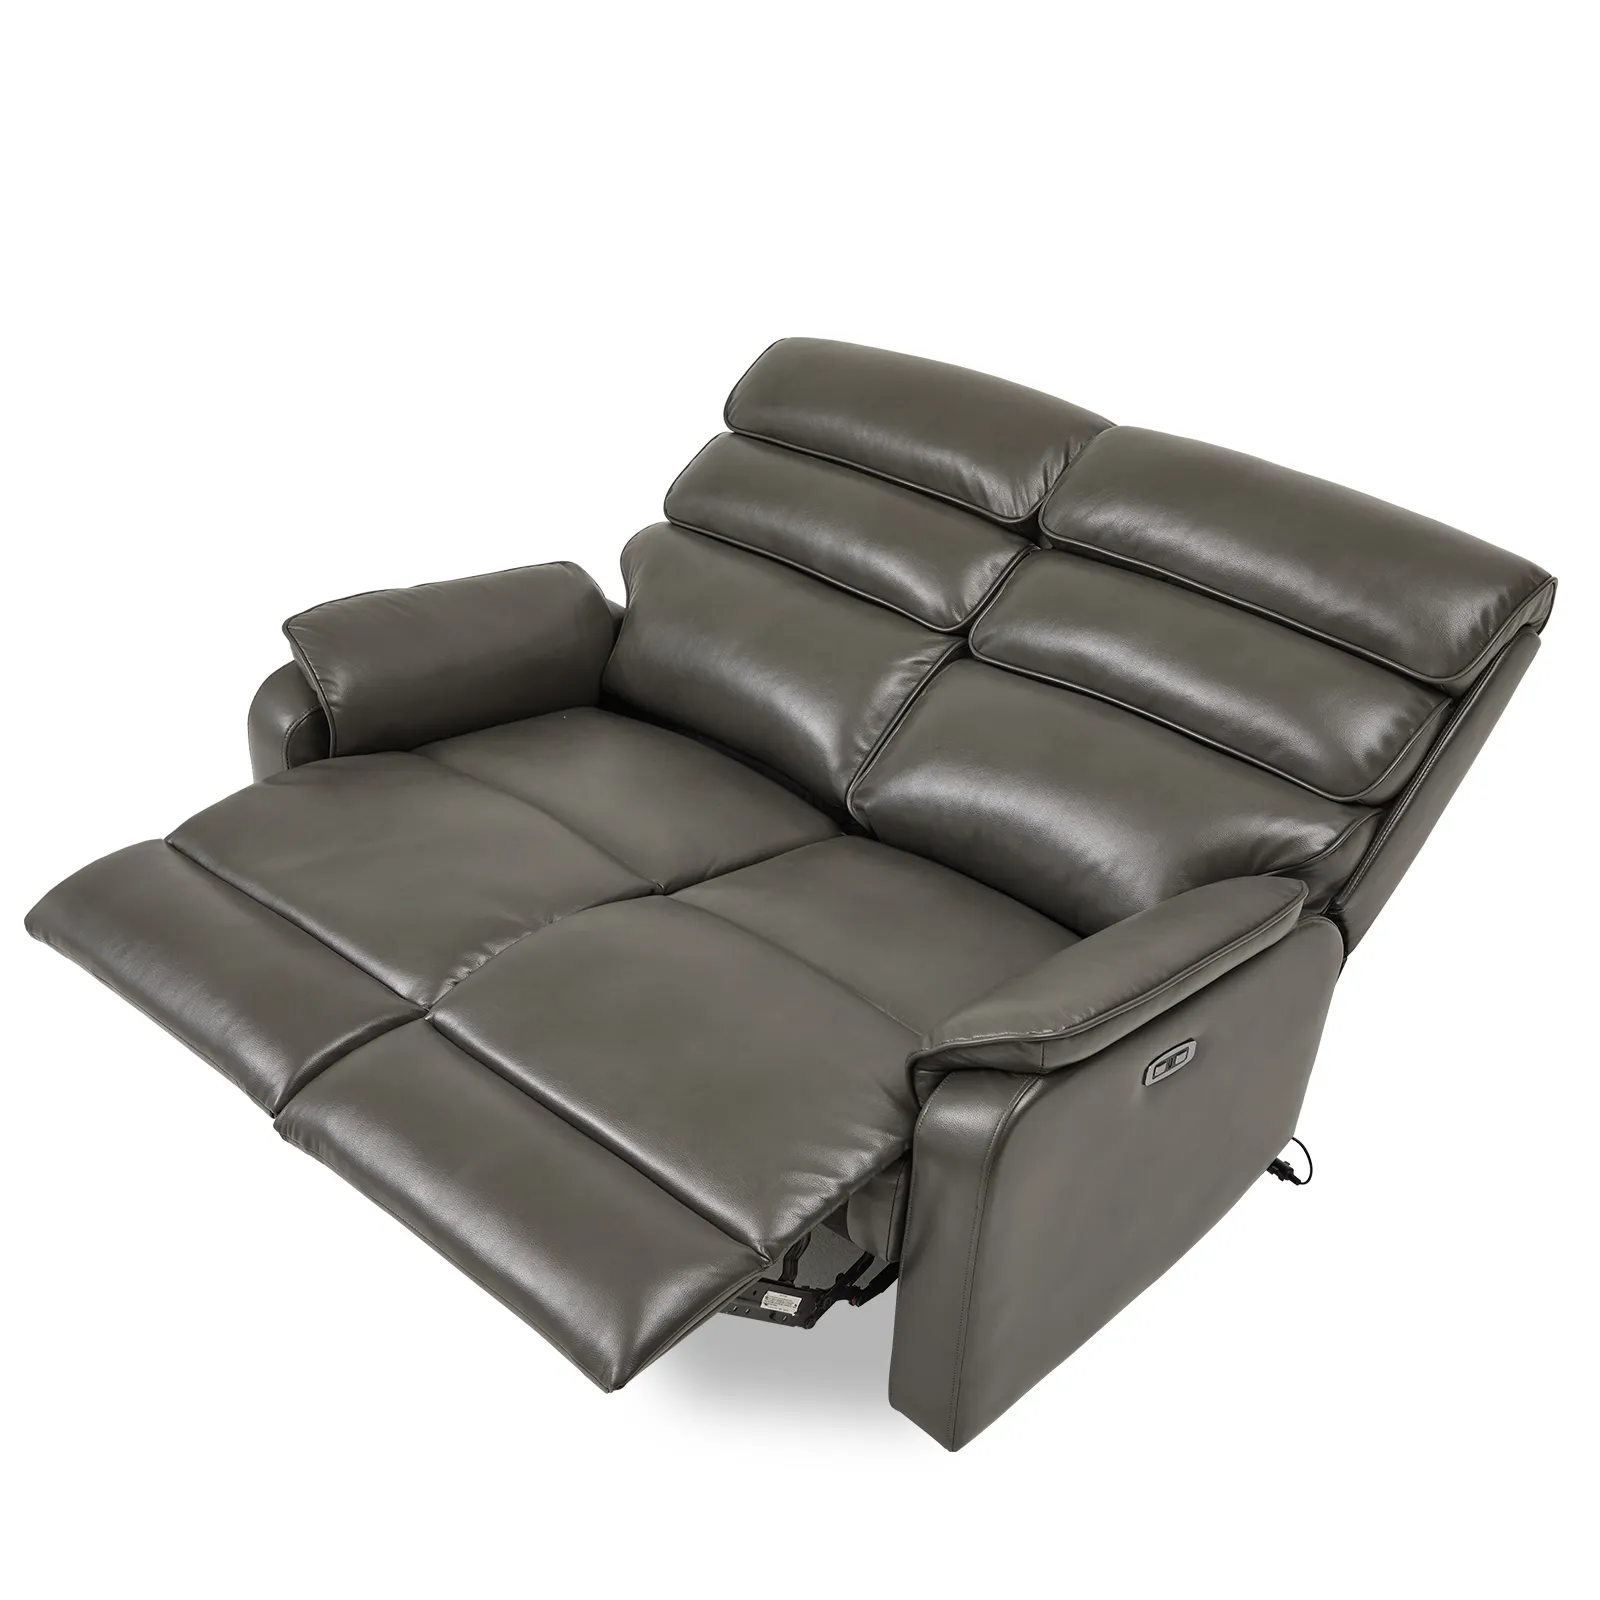 CJSmart per la casa di potere divano Loveseat divano con bottoni per anziani 300 libbre moderna sedia elettrica a 2 posti con porta USB, 6002